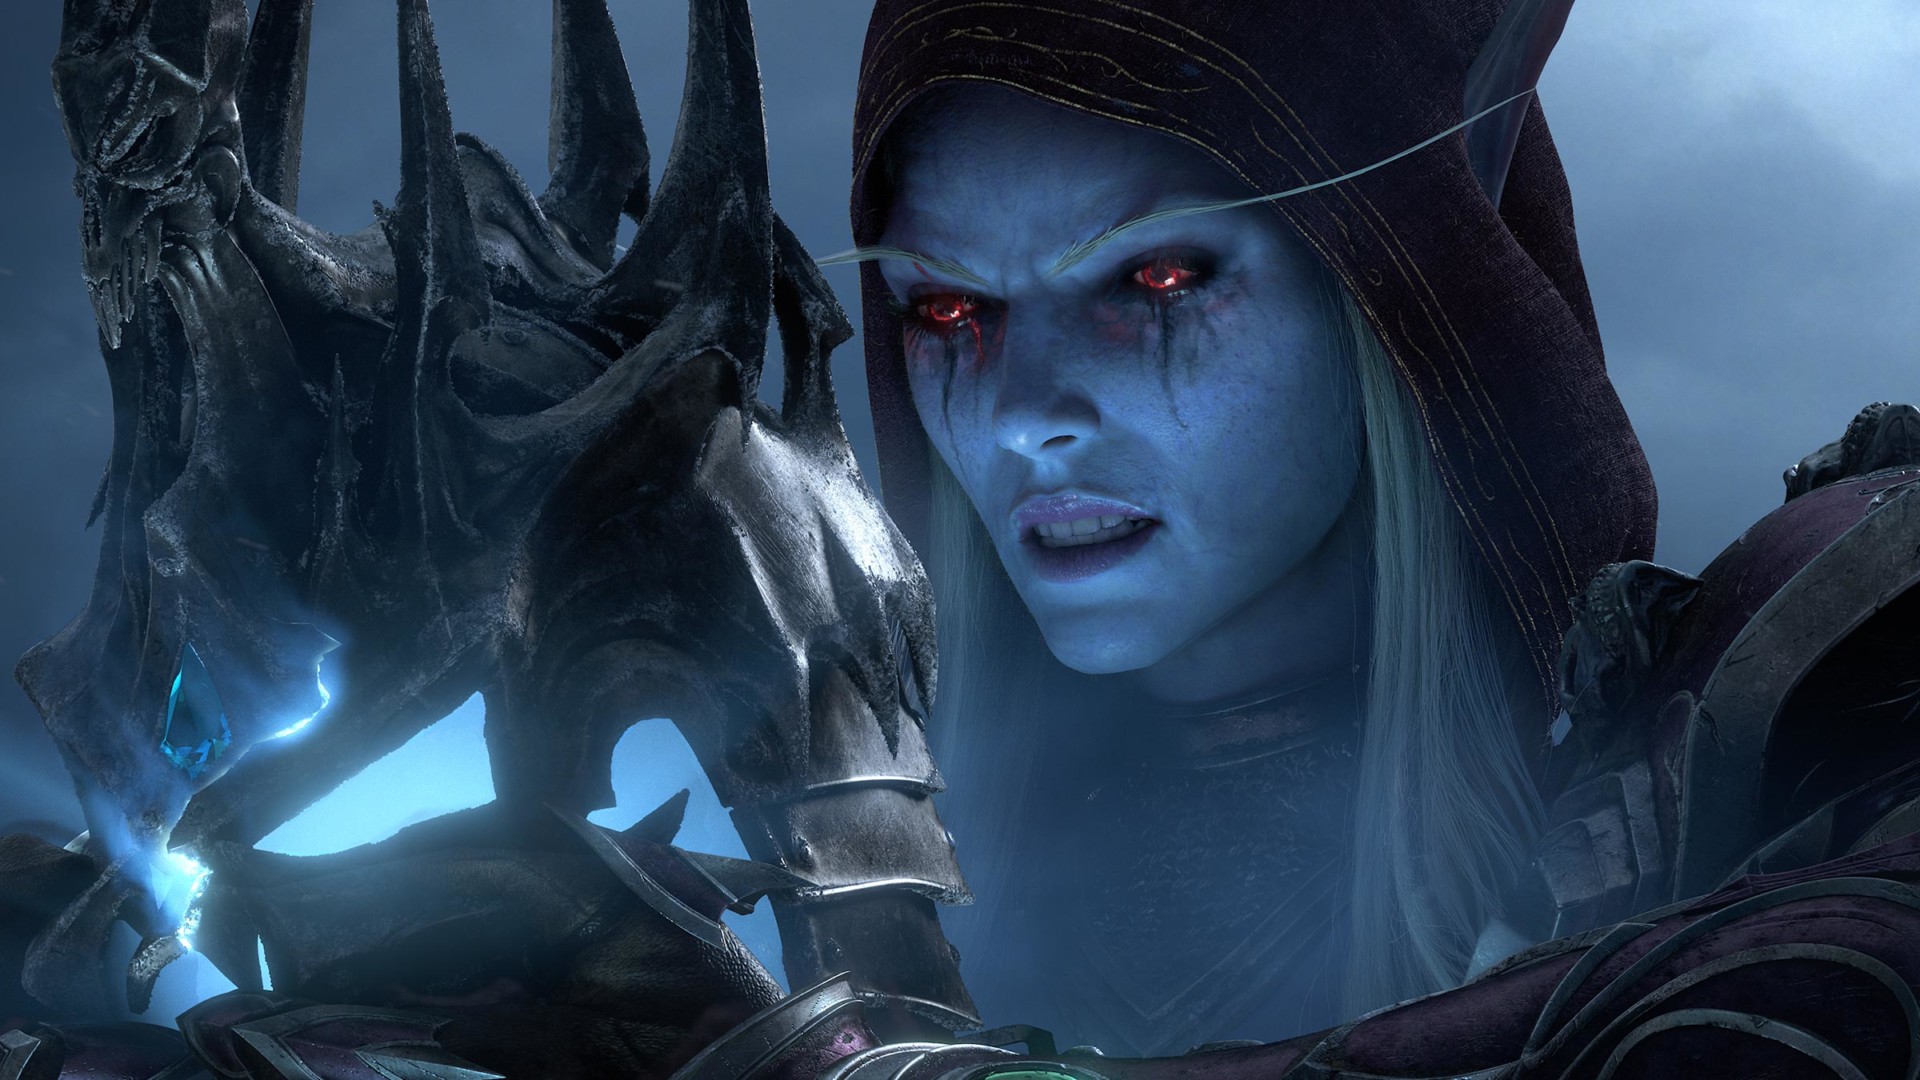 Wkrótce ujawnione zostaną kolejne dodatki do World of Warcraft i Hearthstone